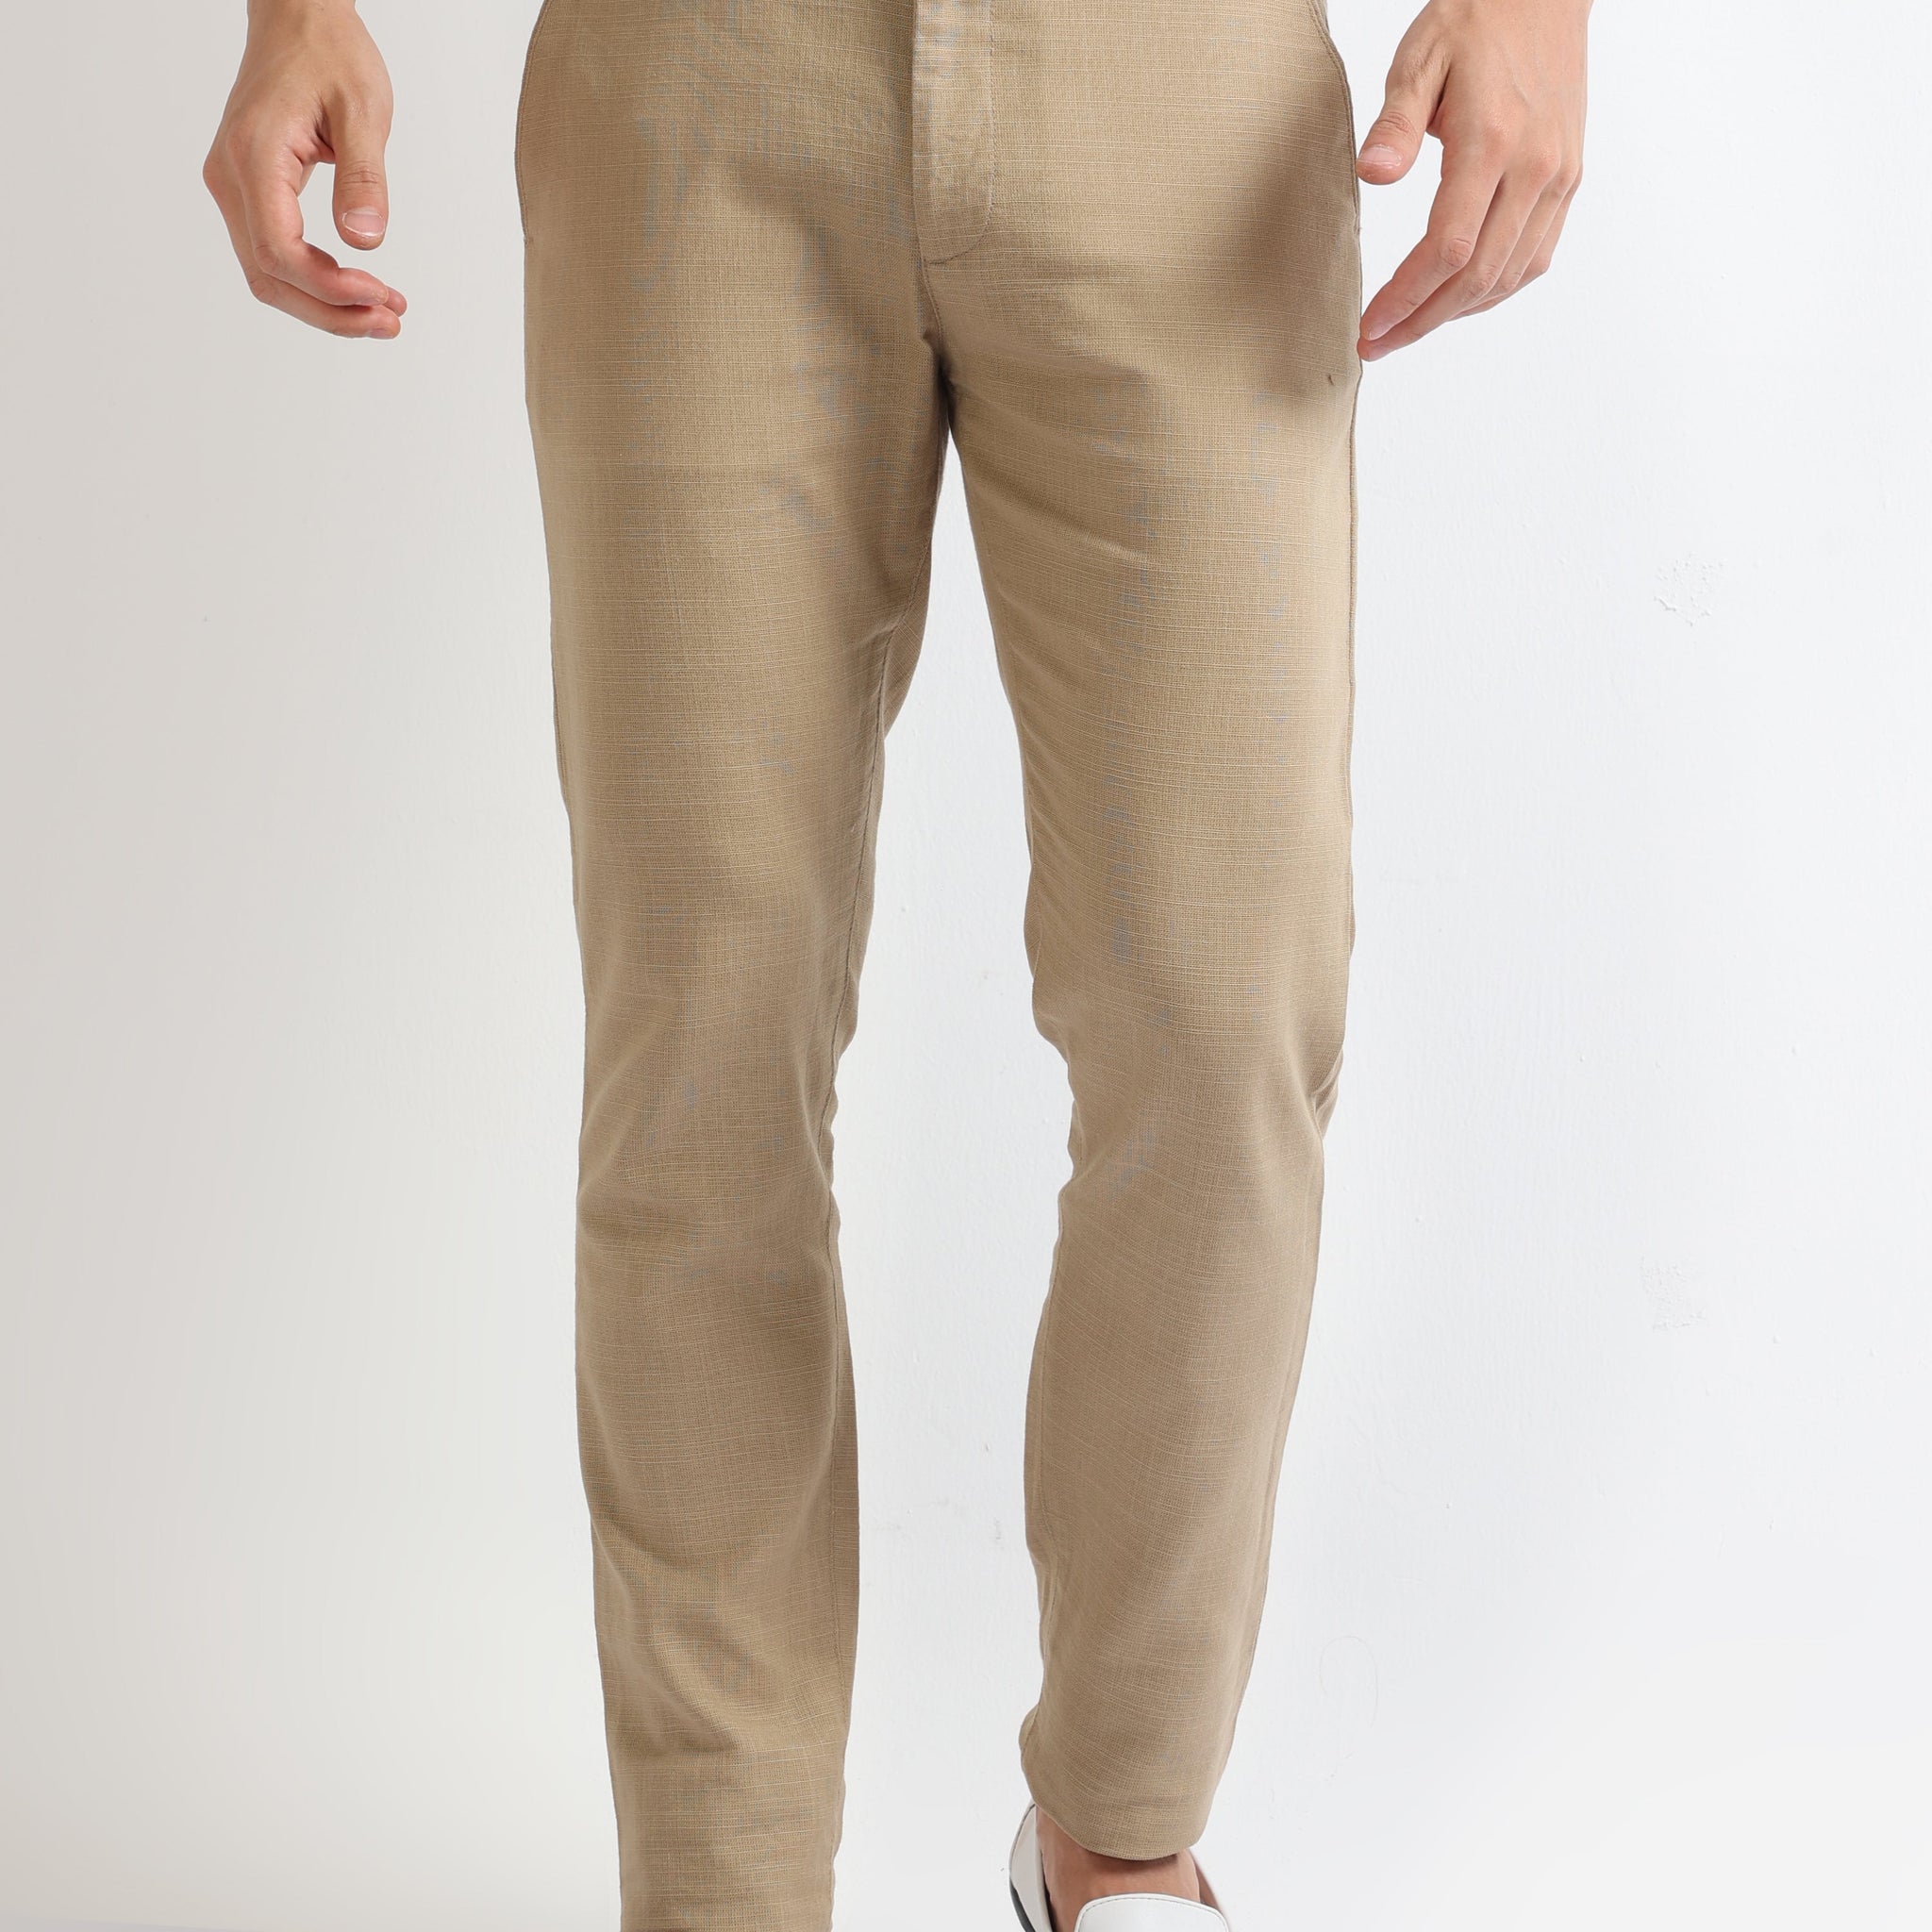 Buy Cotton-Linen Blend Trousers Online.